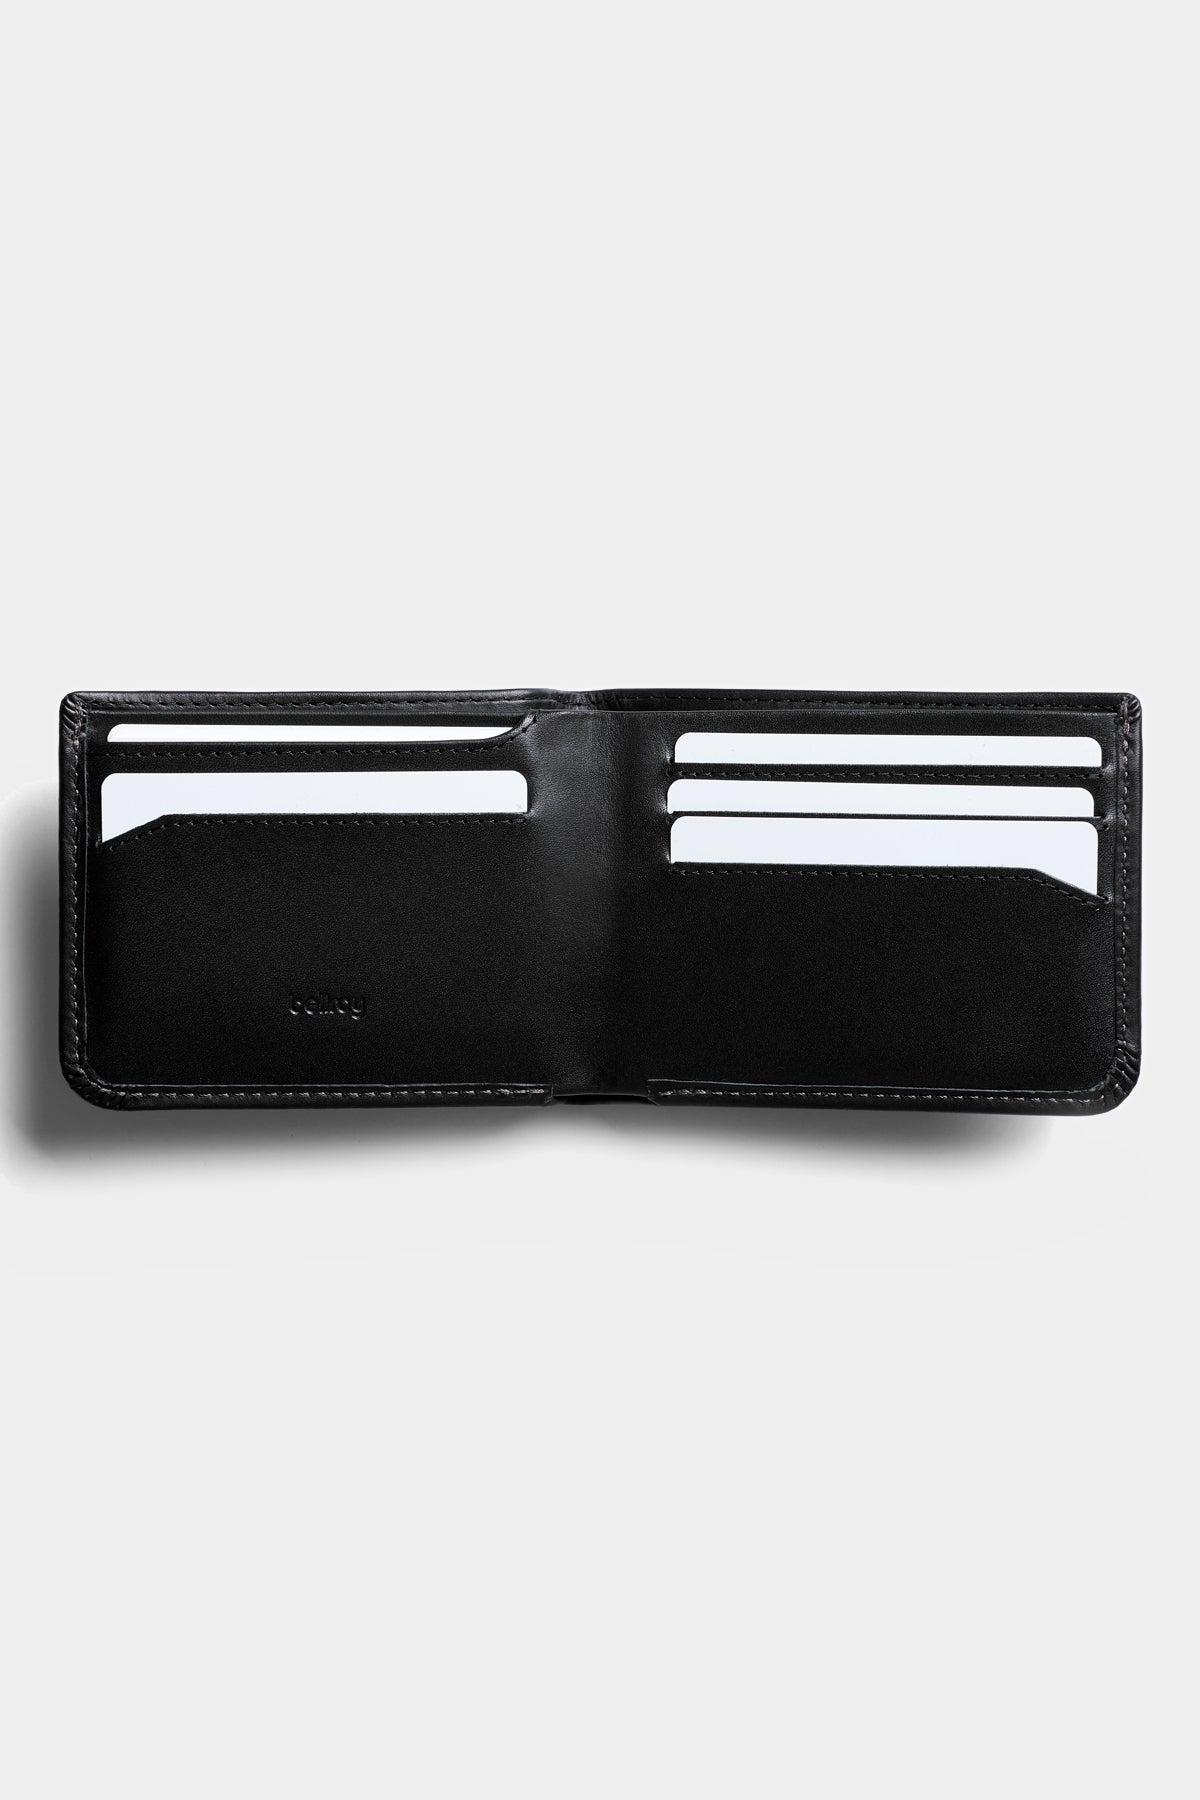 Bellroy Hide & Seek RFID Wallet Black